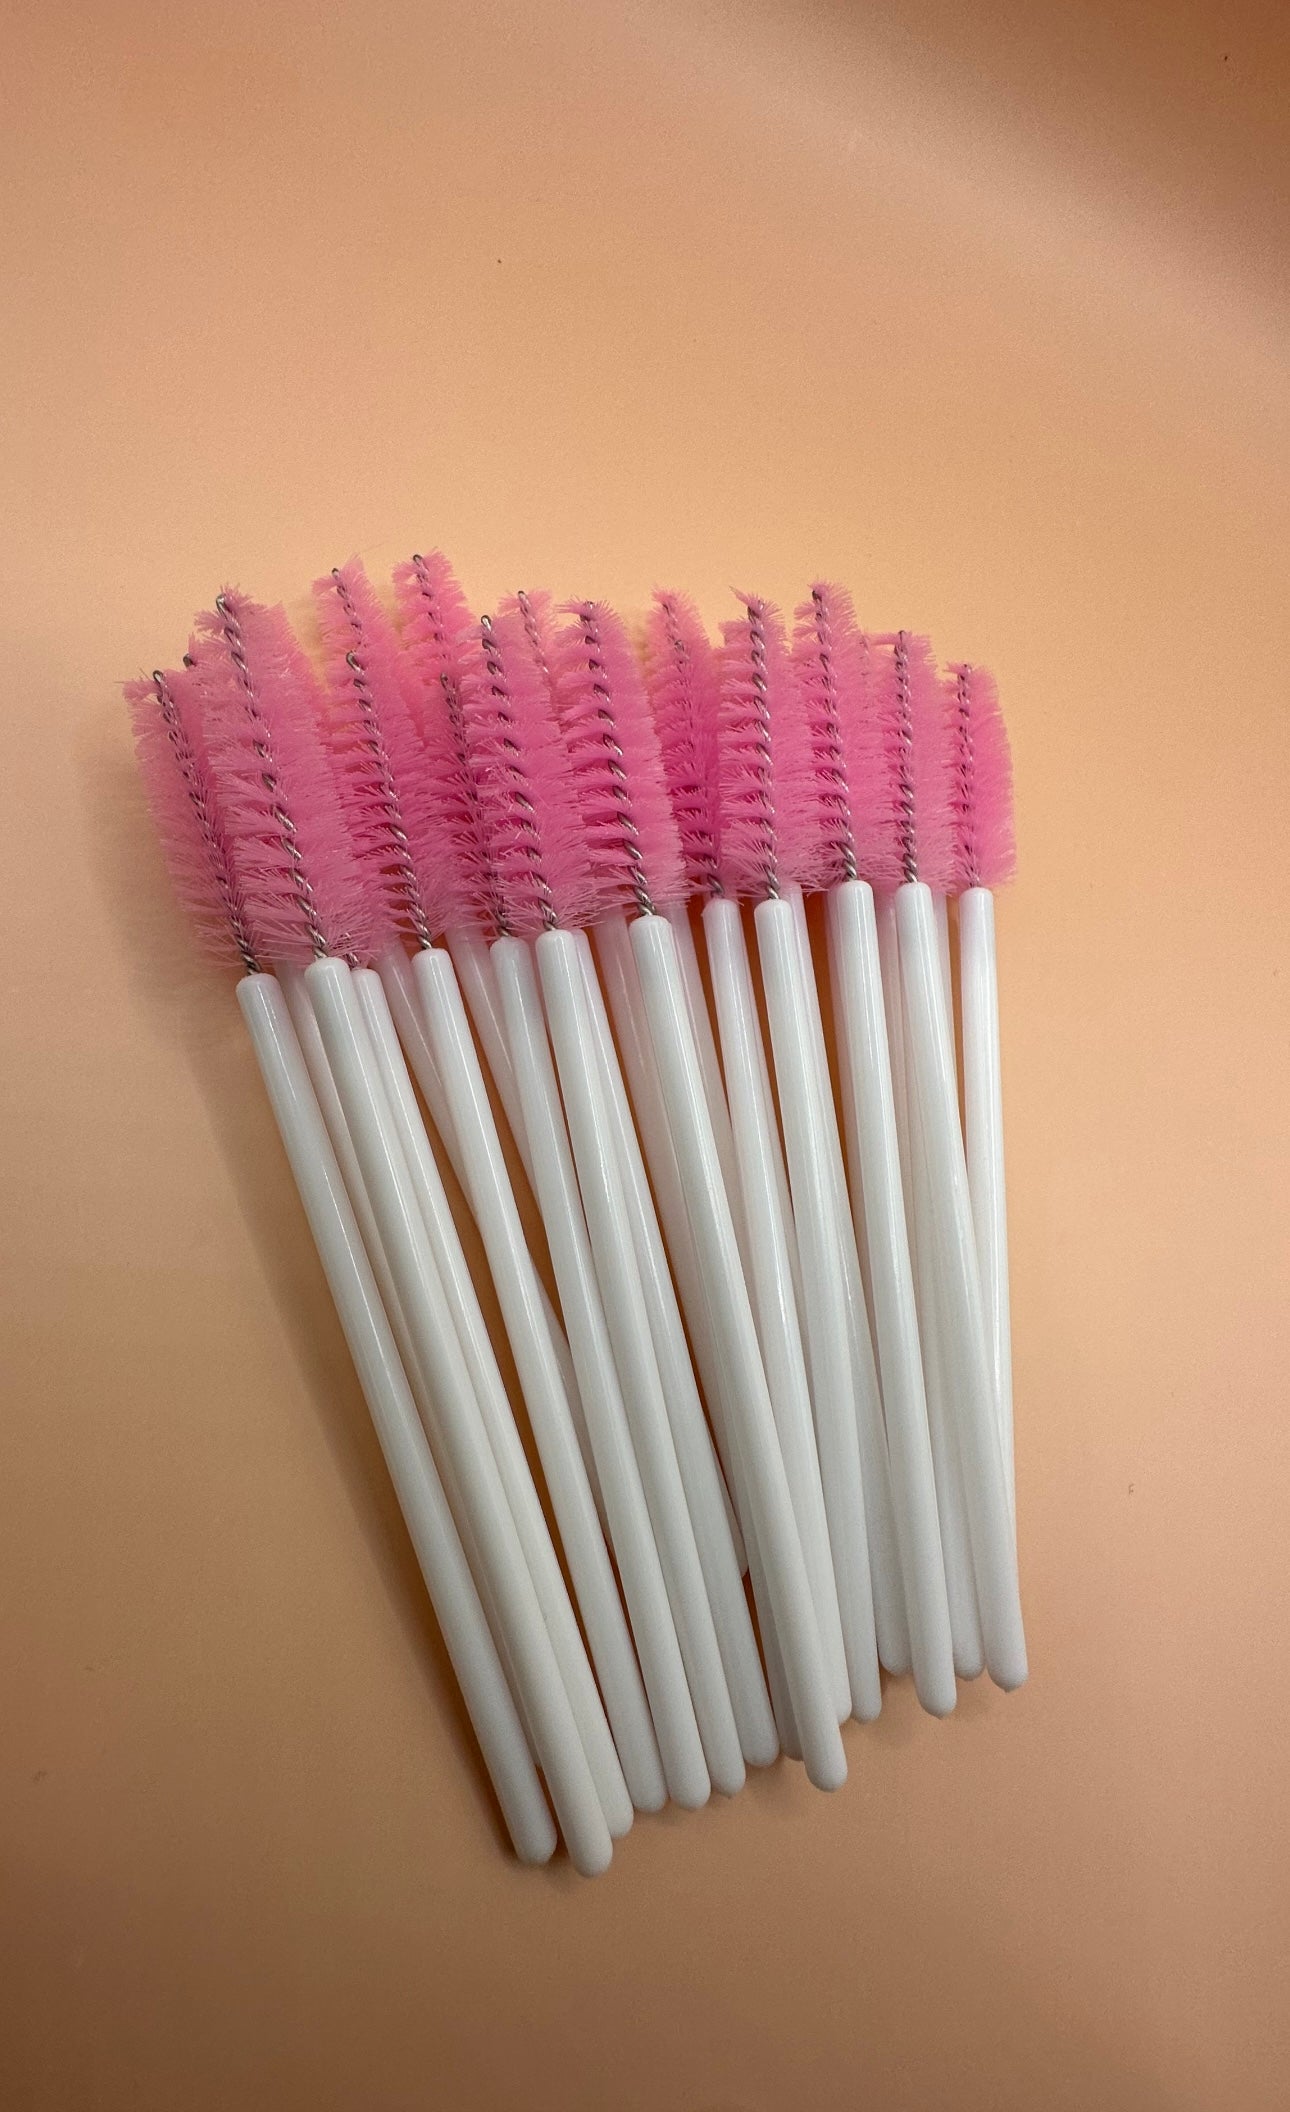 Pink Bristle Mascara Wands